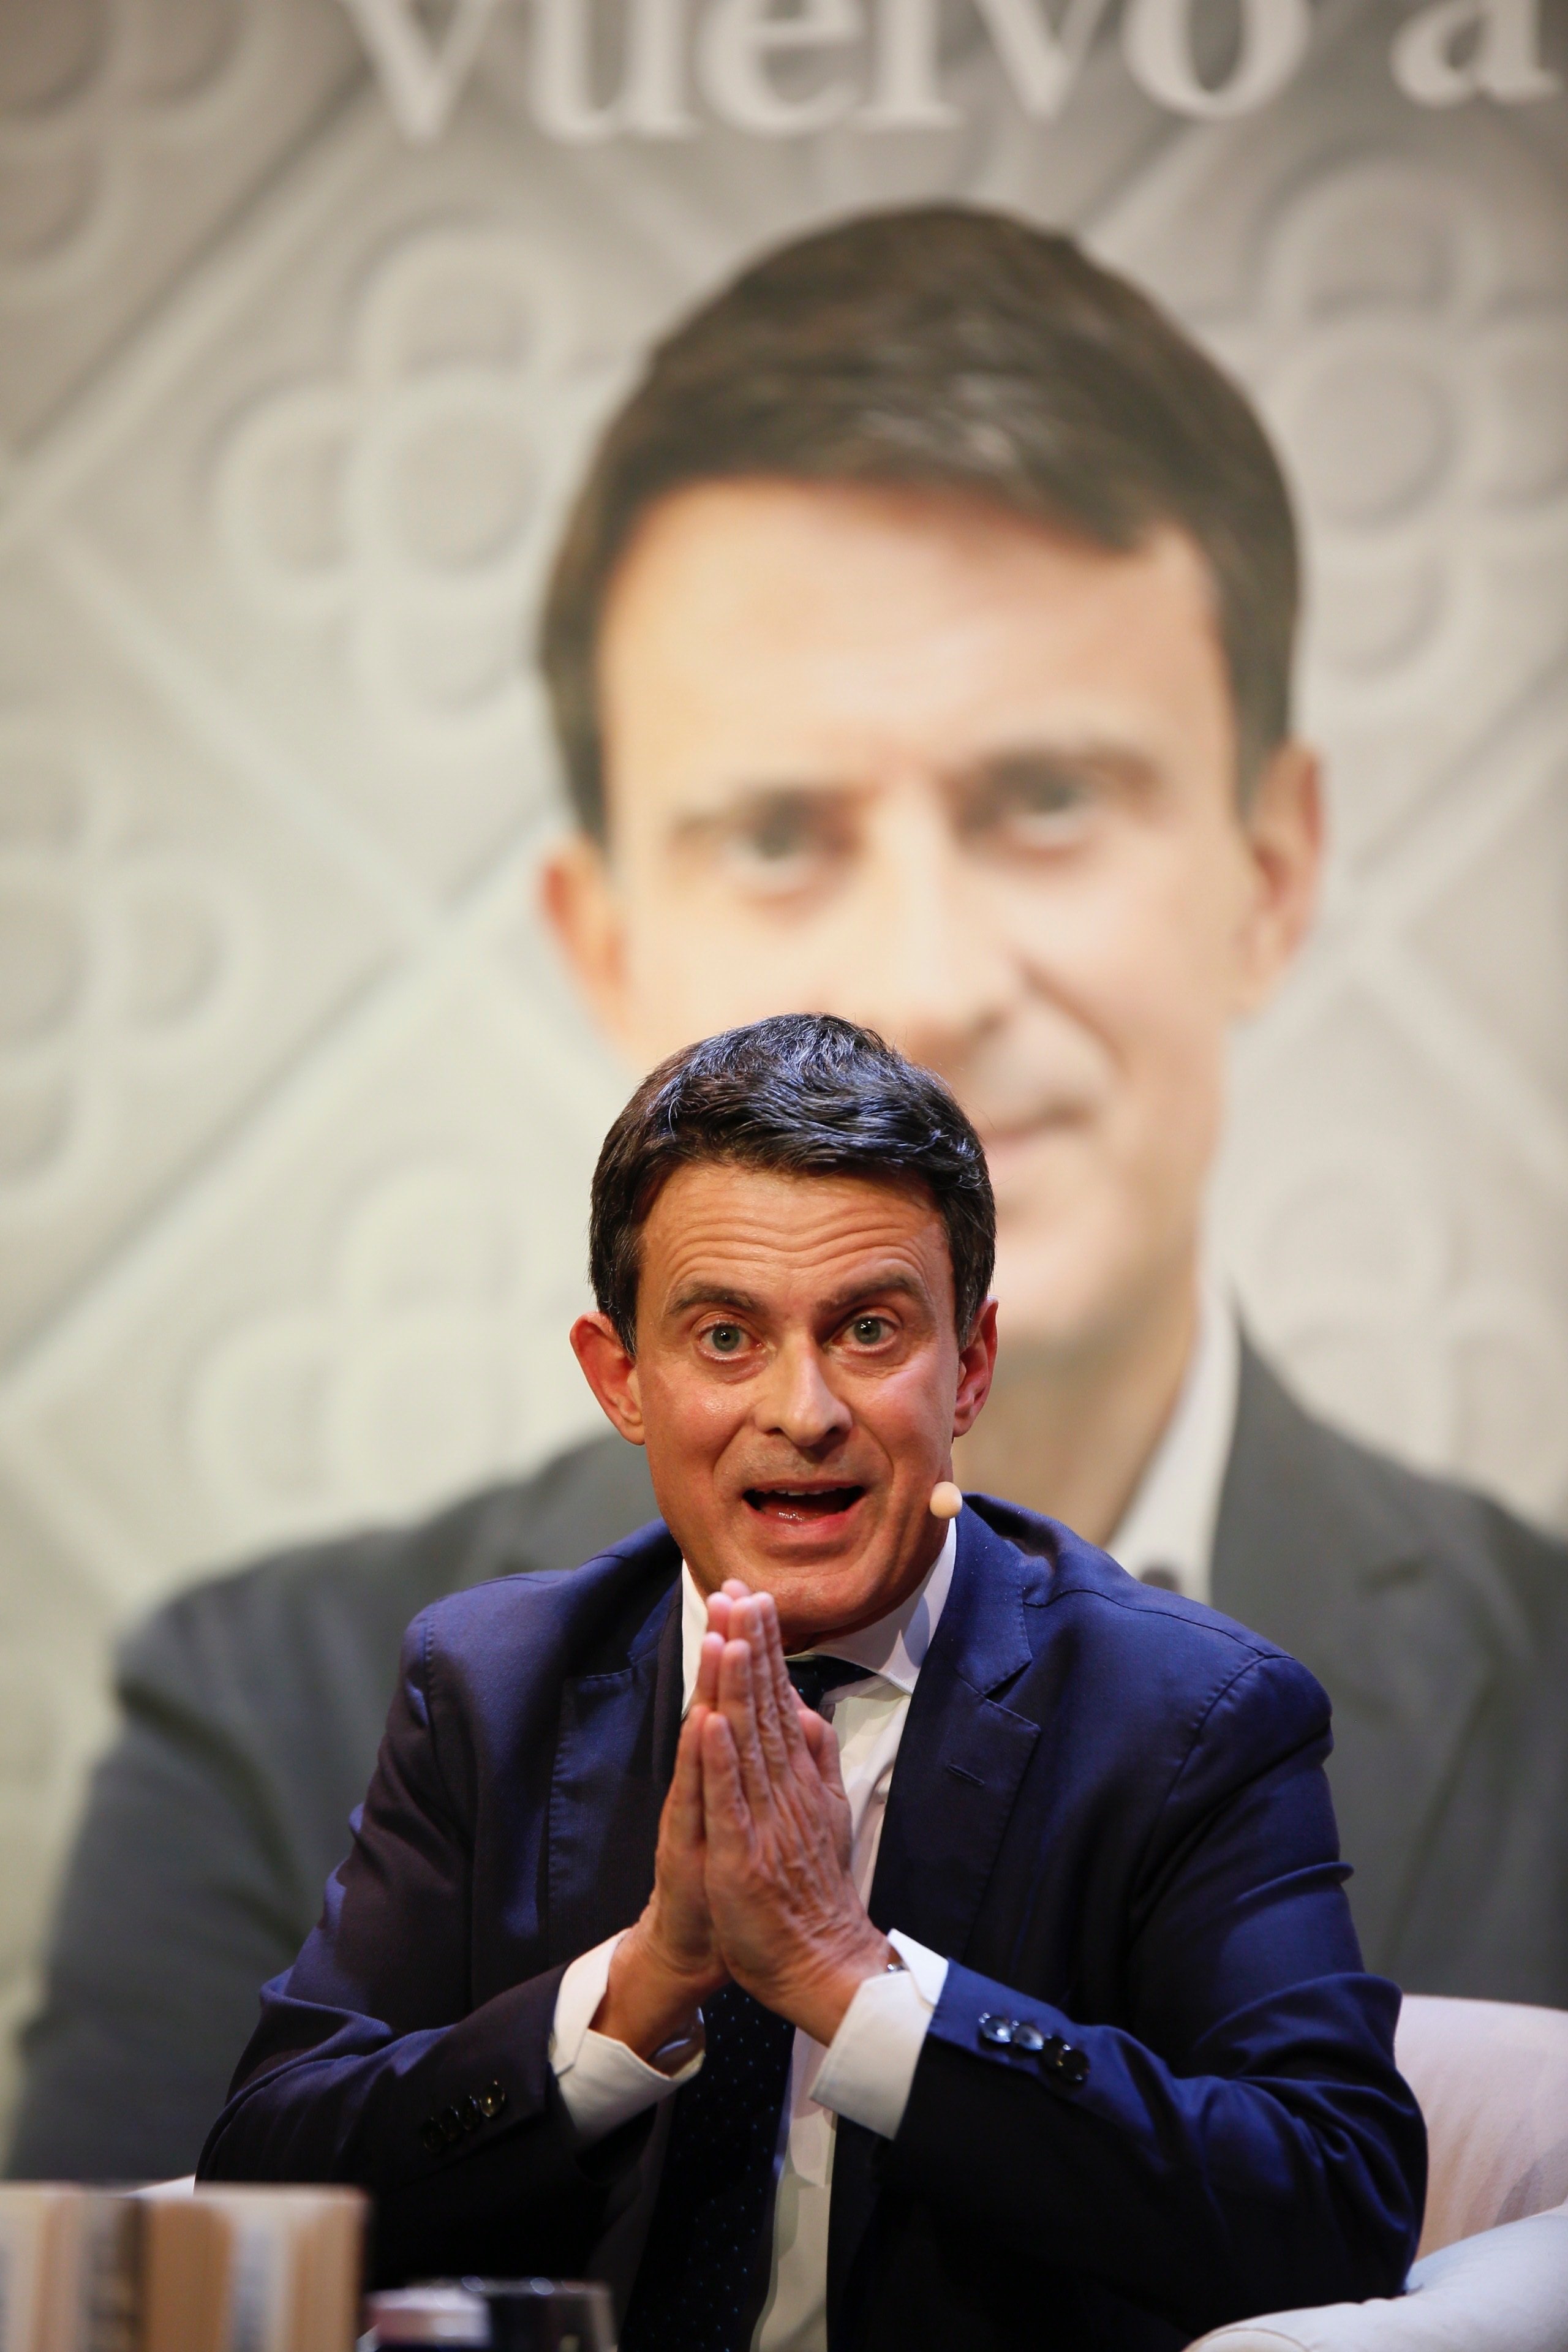 Ridícul de Manuel Valls: li pregunten quant costa el metro i ell parla de taxis